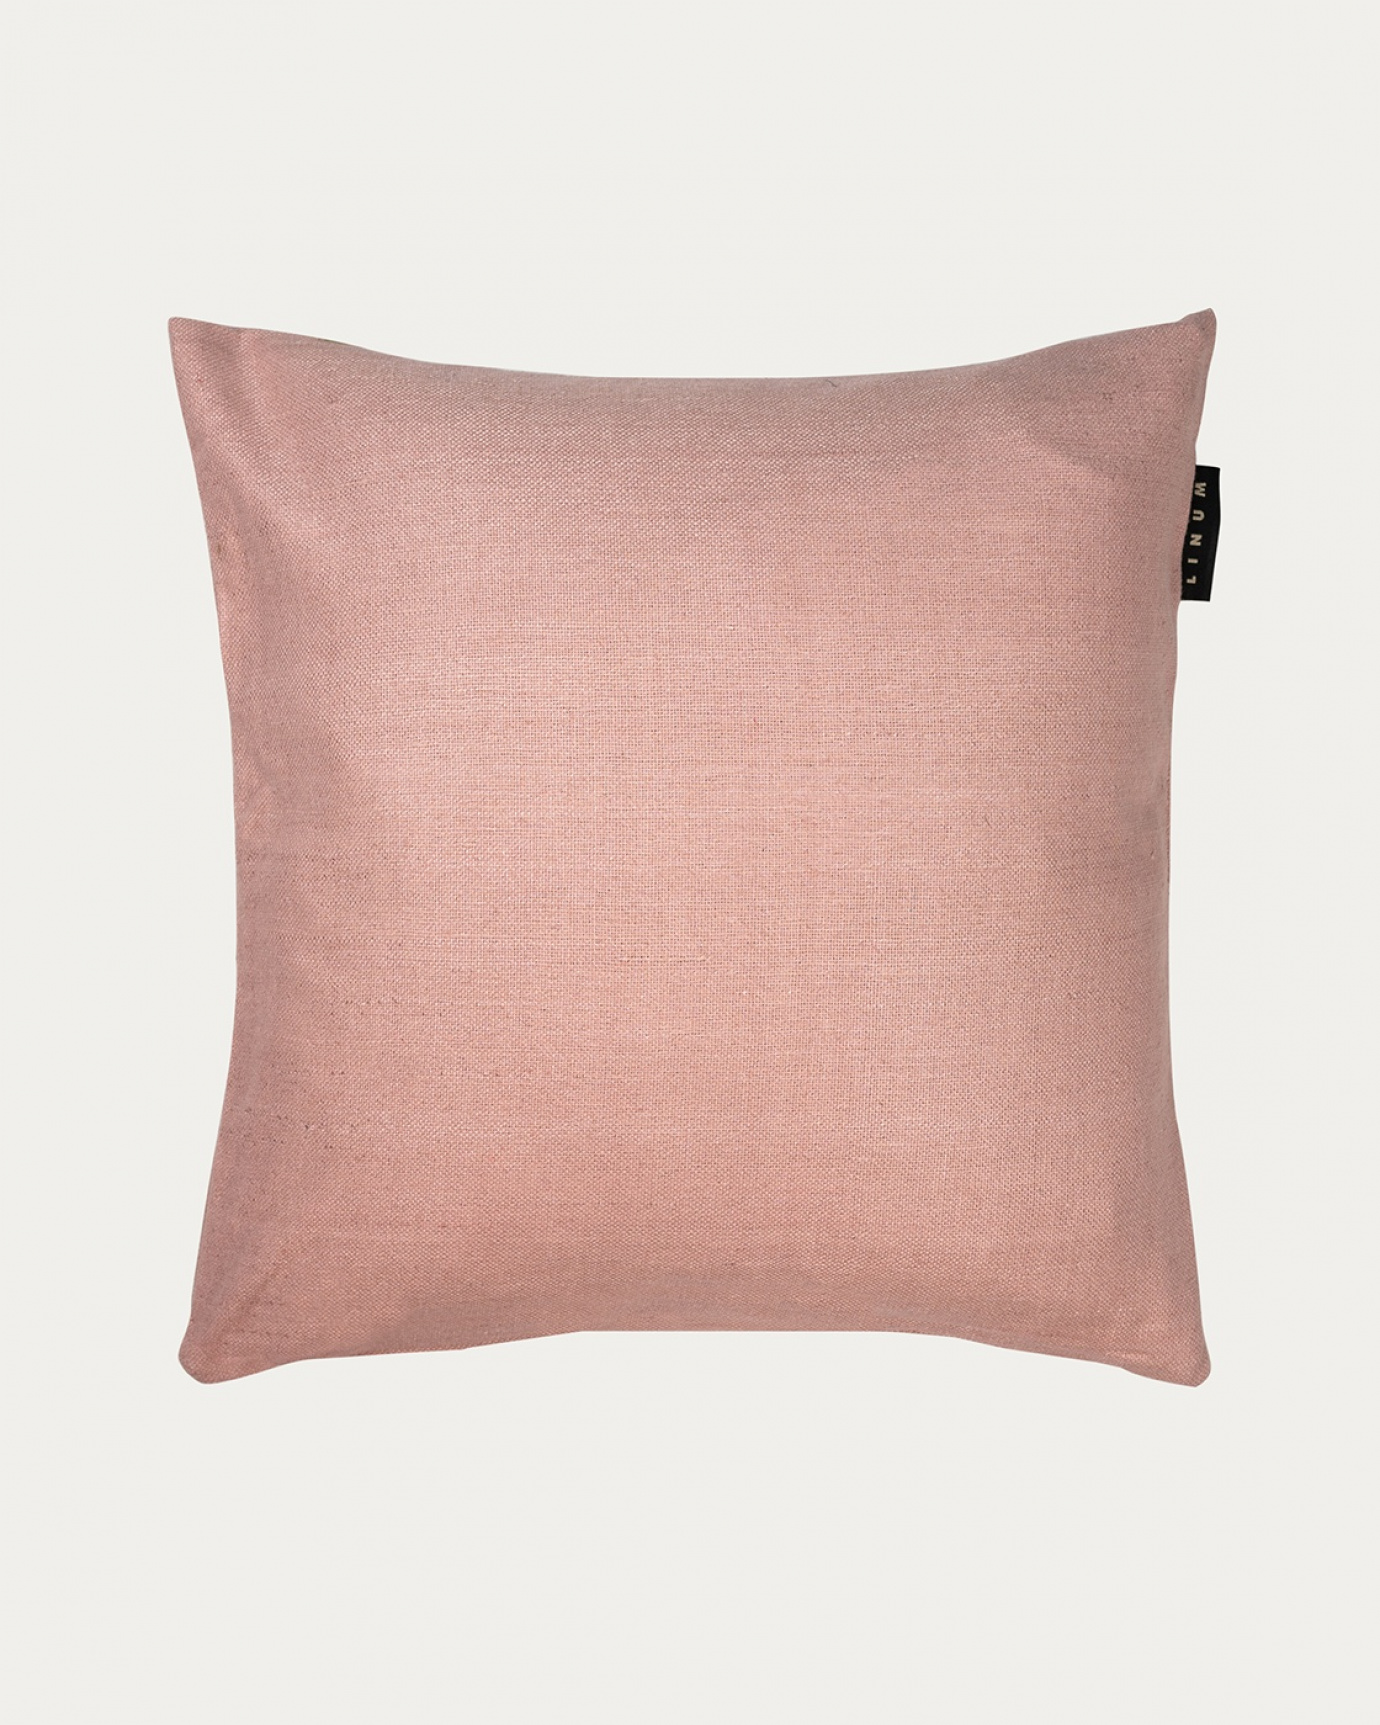 Immagine prodotto rosa antico SETA copricuscini realizzata in 100% seta grezza che dona una bella lucentezza da LINUM DESIGN. Dimensioni 50x50 cm.